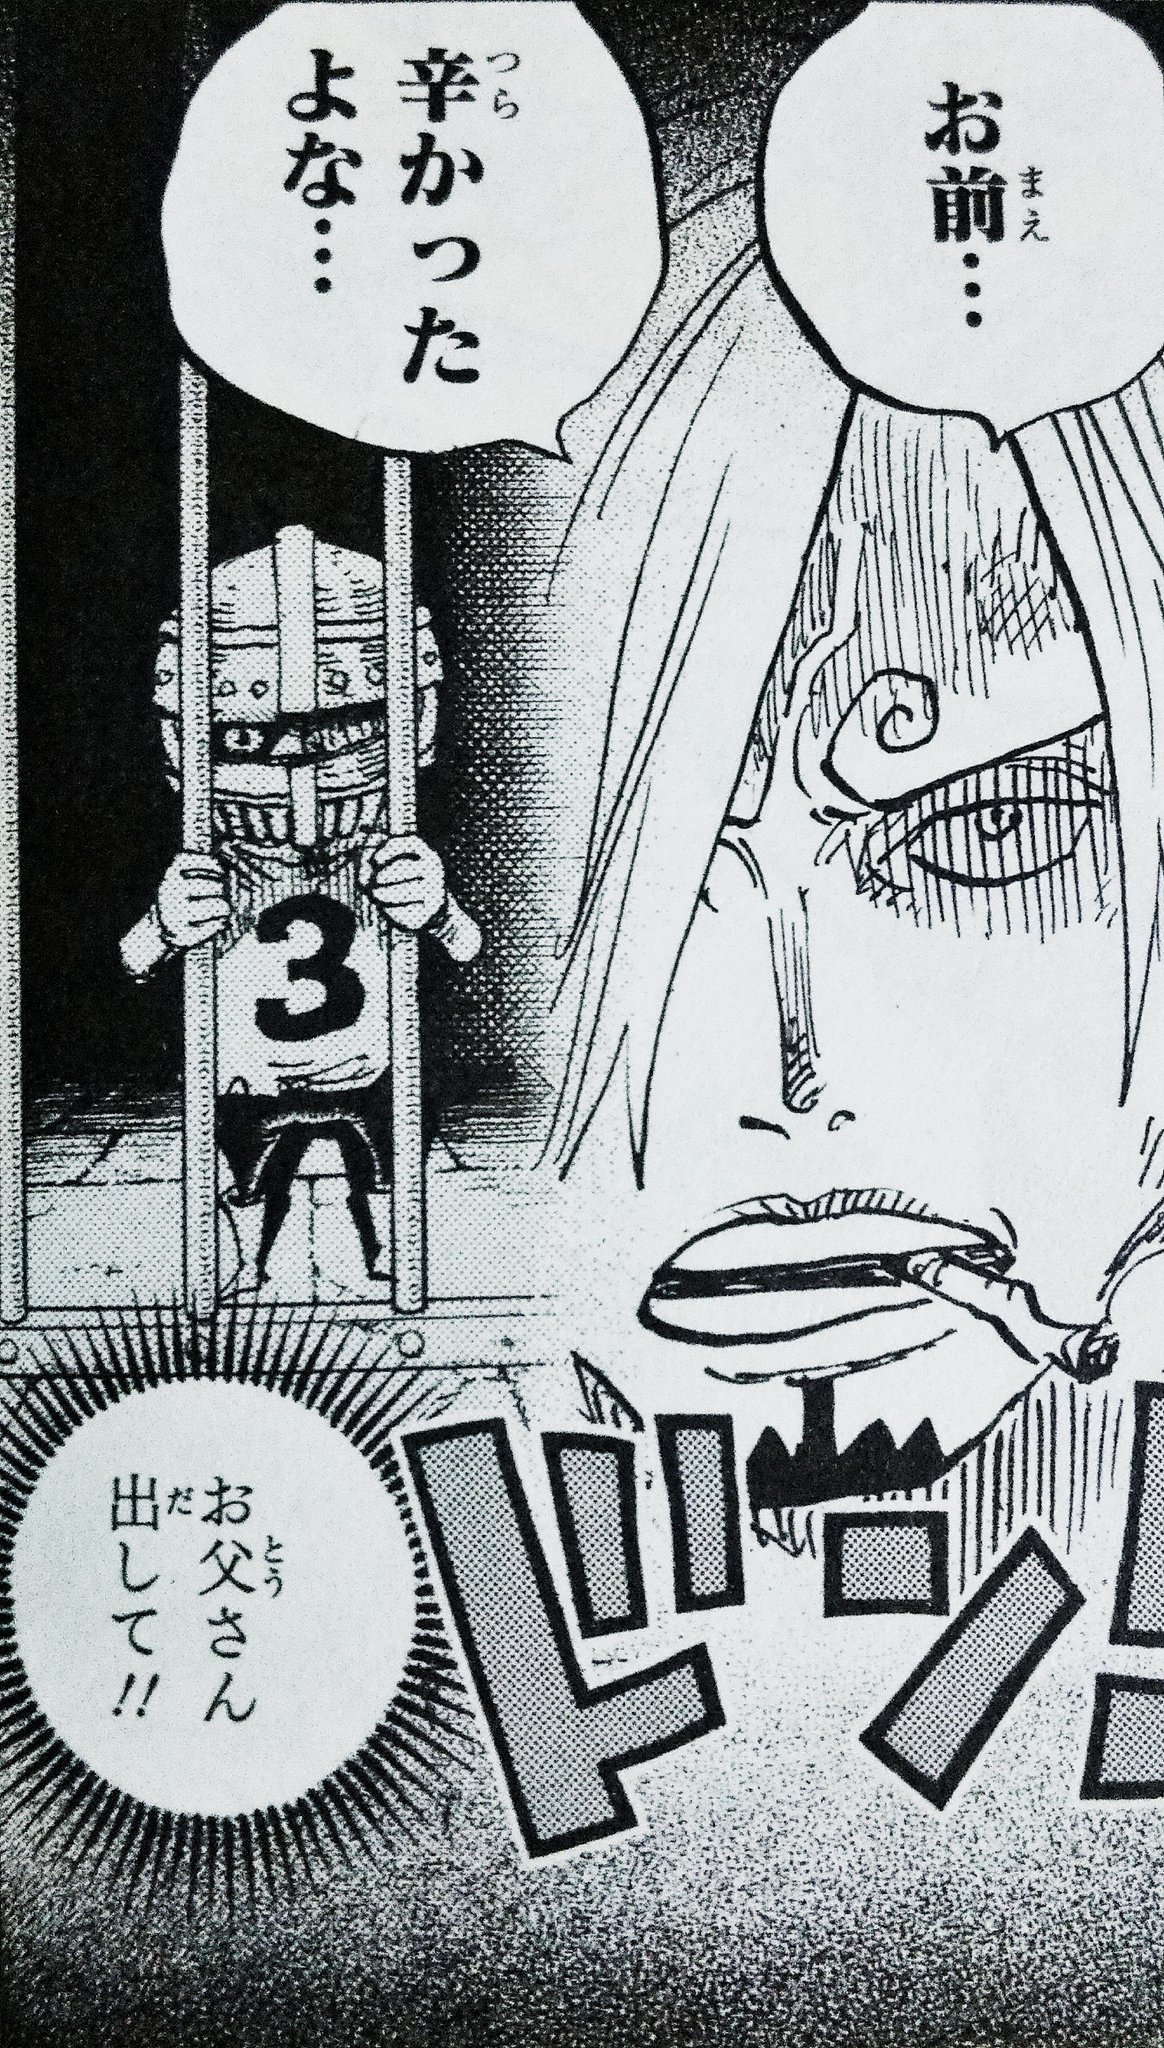 まな 在 Twitter 上 One Piece 巻 ヴィンスモーク ジャッジ の鉄仮面サンジの目はただの描き間違いでしたね 安心しました 写真訂正前 訂正後 84巻は腕輪や眉毛の向きなど書き忘れ 描き間違いが現時点でもかなりあるので 直しの作業が大変そうだなあ